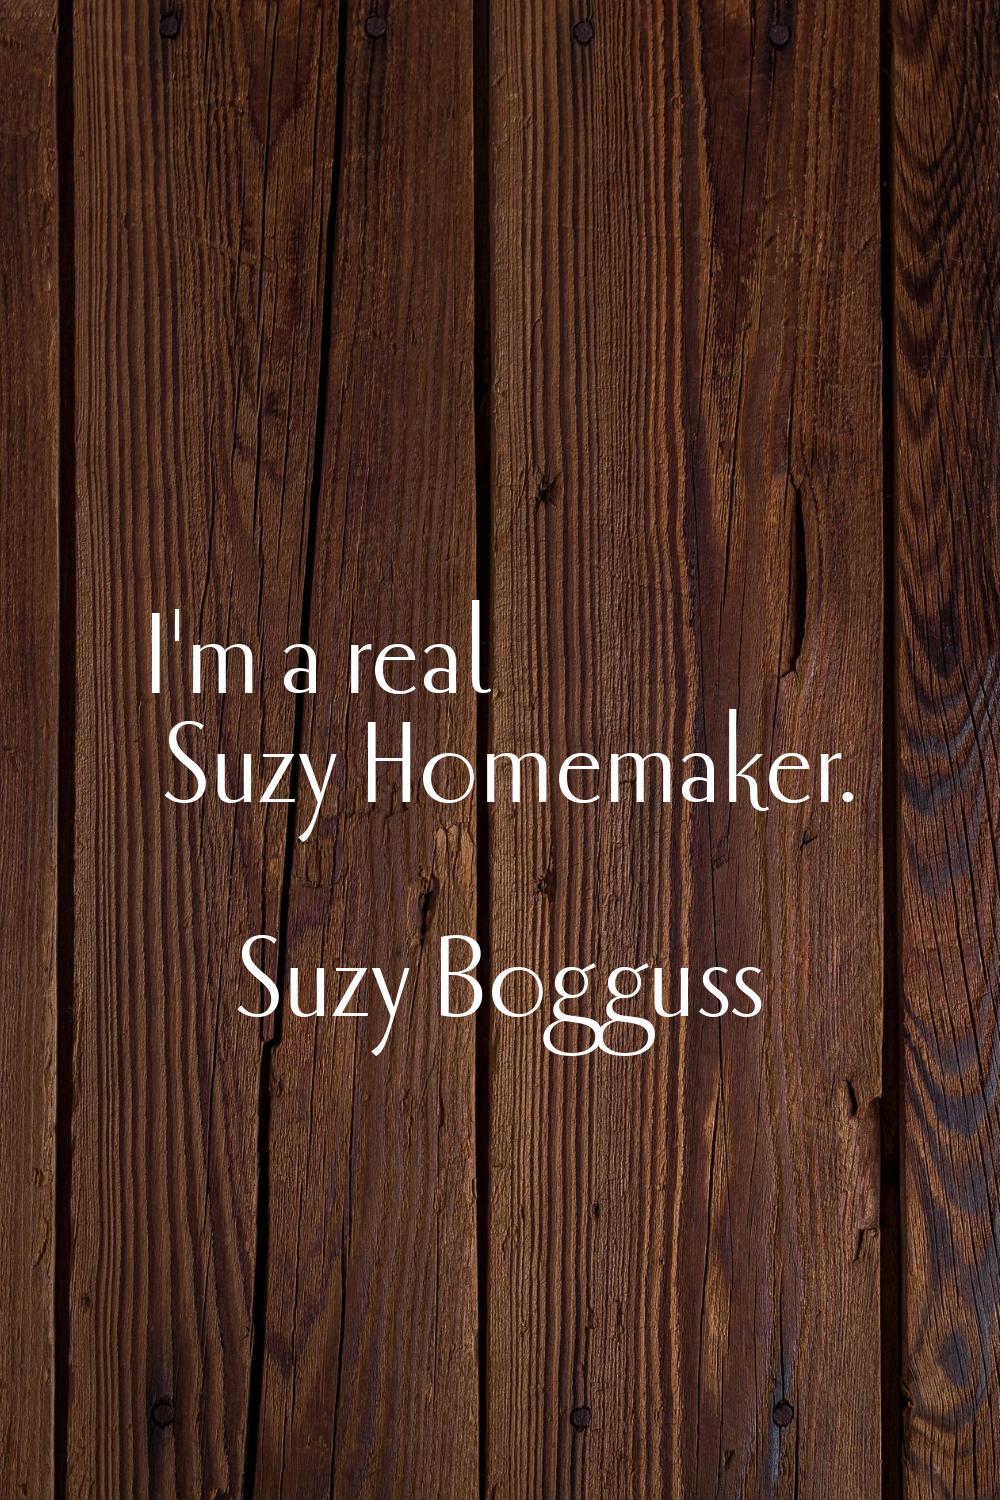 I'm a real Suzy Homemaker.